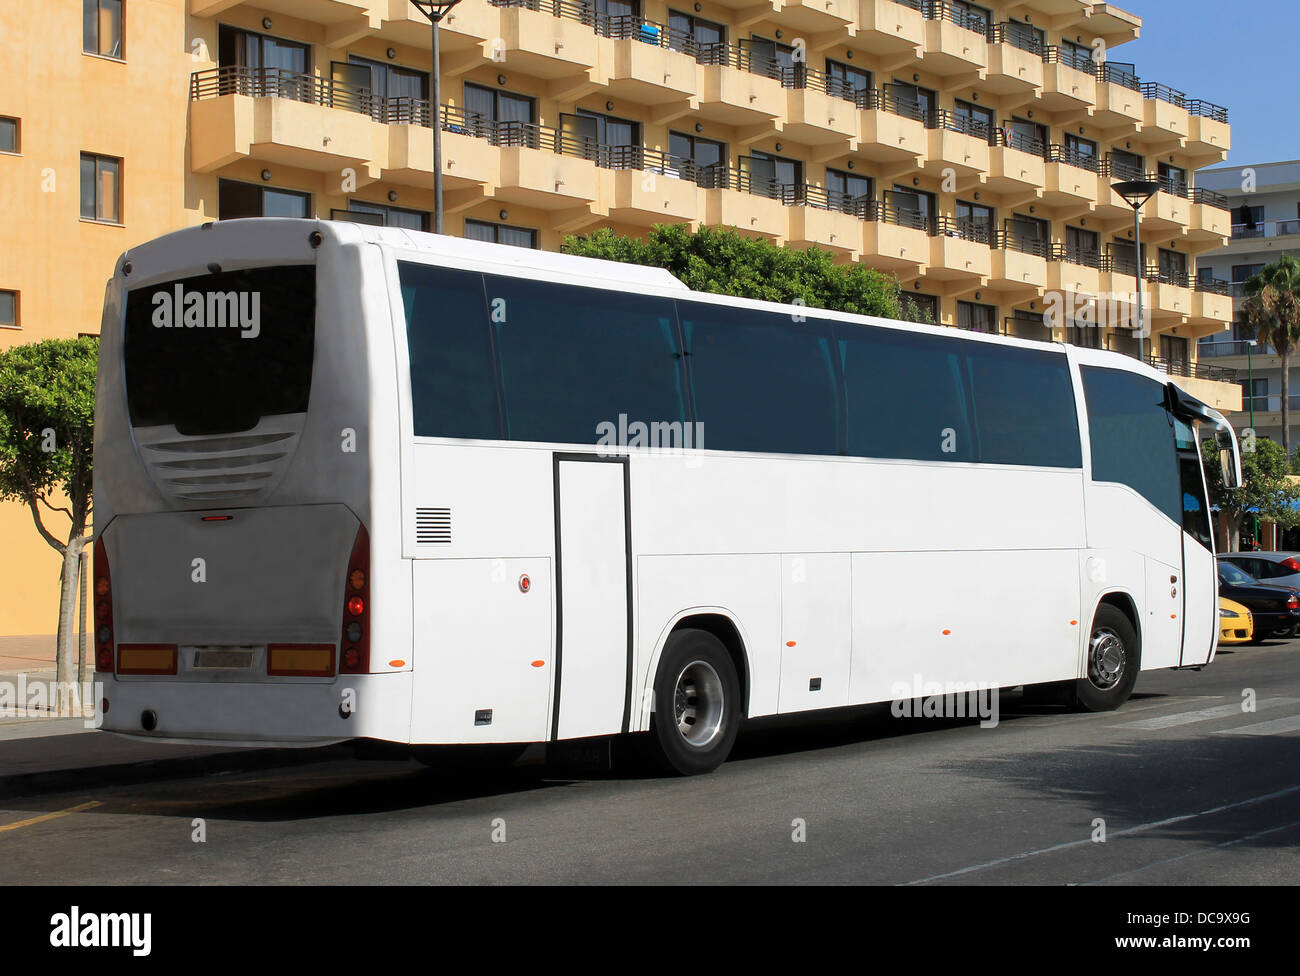 Bus touristique à l'extérieur de l'hôtel sur l'île de Majorque, Espagne. Banque D'Images